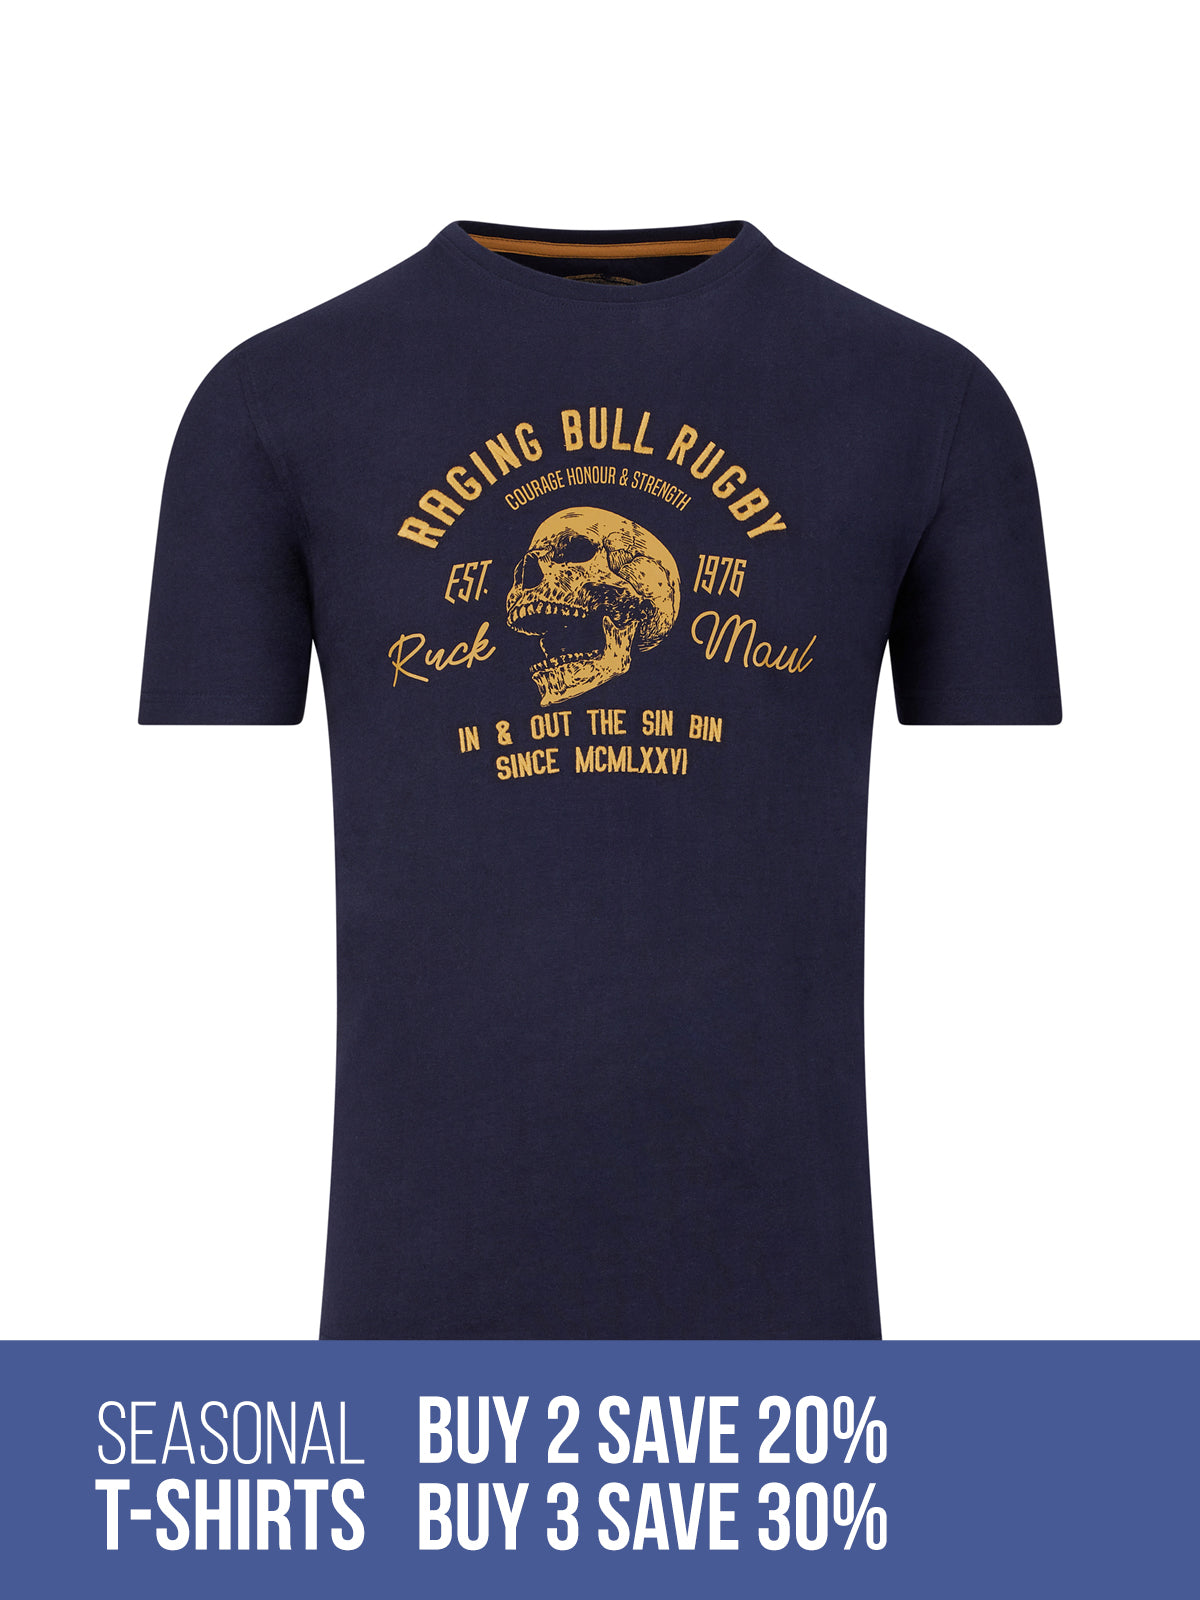 Bull Print Men's Graphic T shirt Casual Comfy Tees Summer - Temu